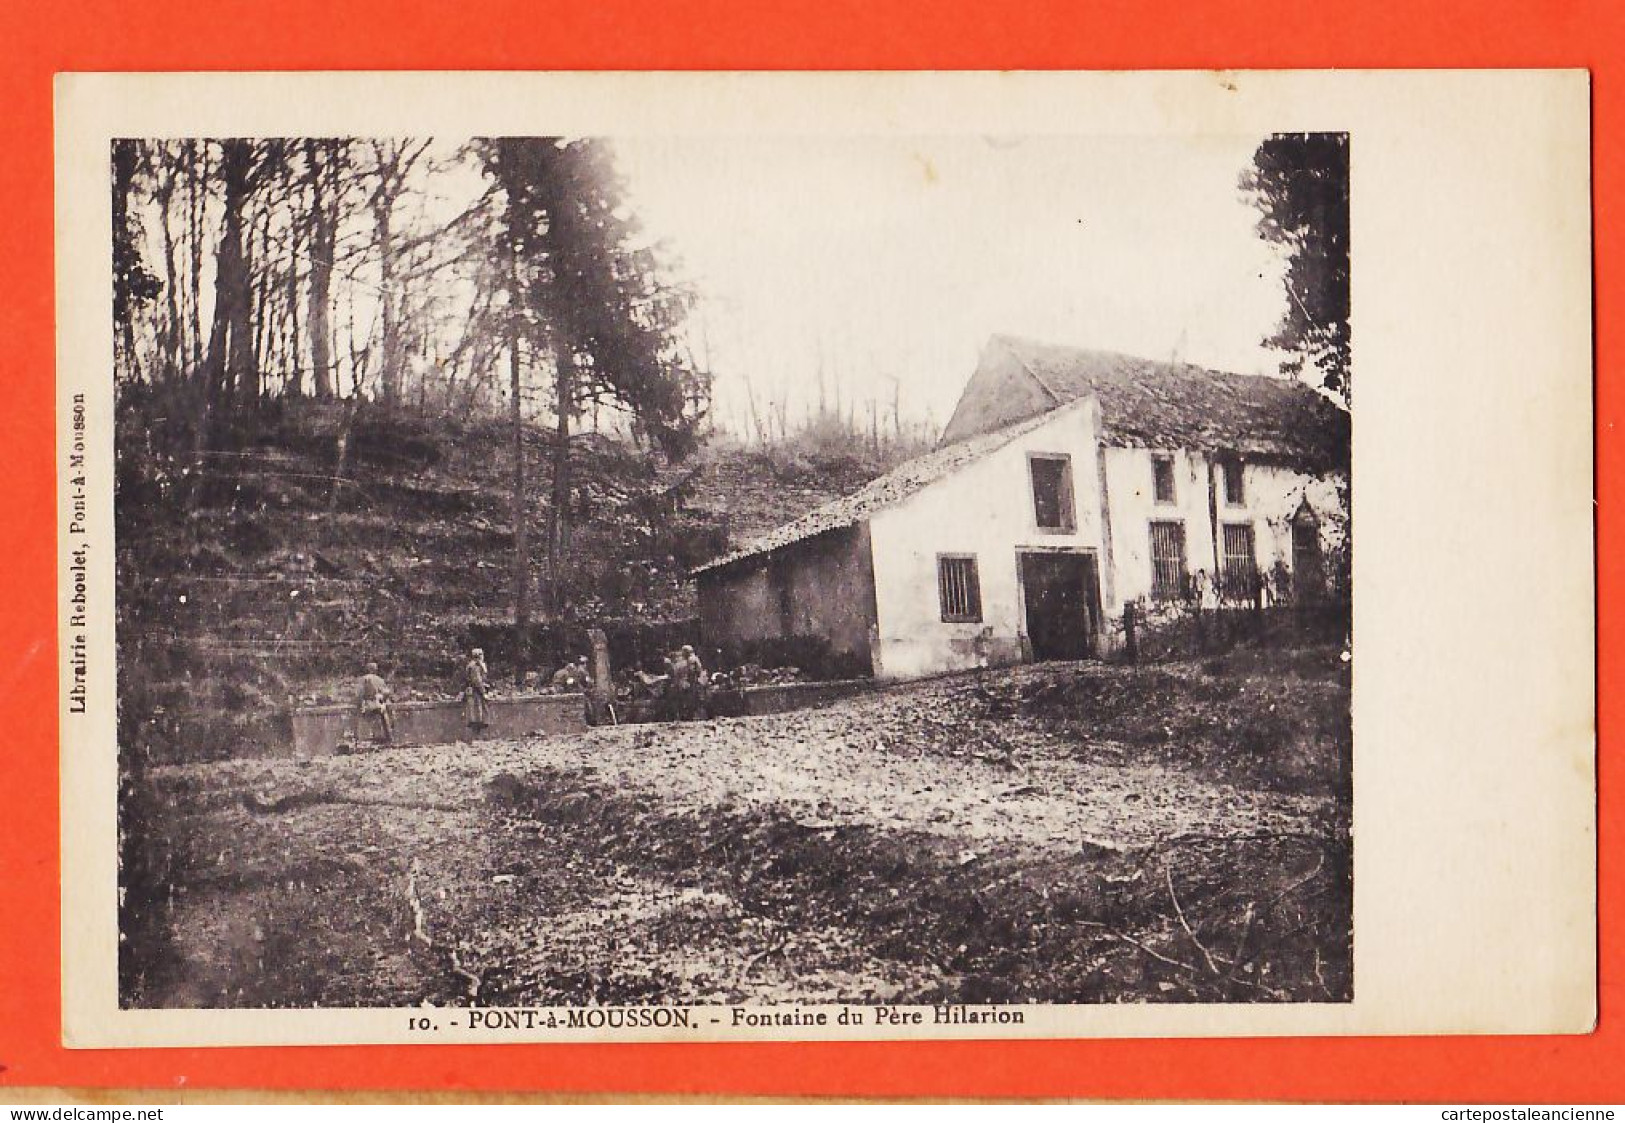 05684 ● PONT-à-MOUSSON (54) Fontaine Du Père HILARION Avant Destruction 1915 BOUF Ch BLAISE Lagney Toul / REBOULET 10  - Pont A Mousson